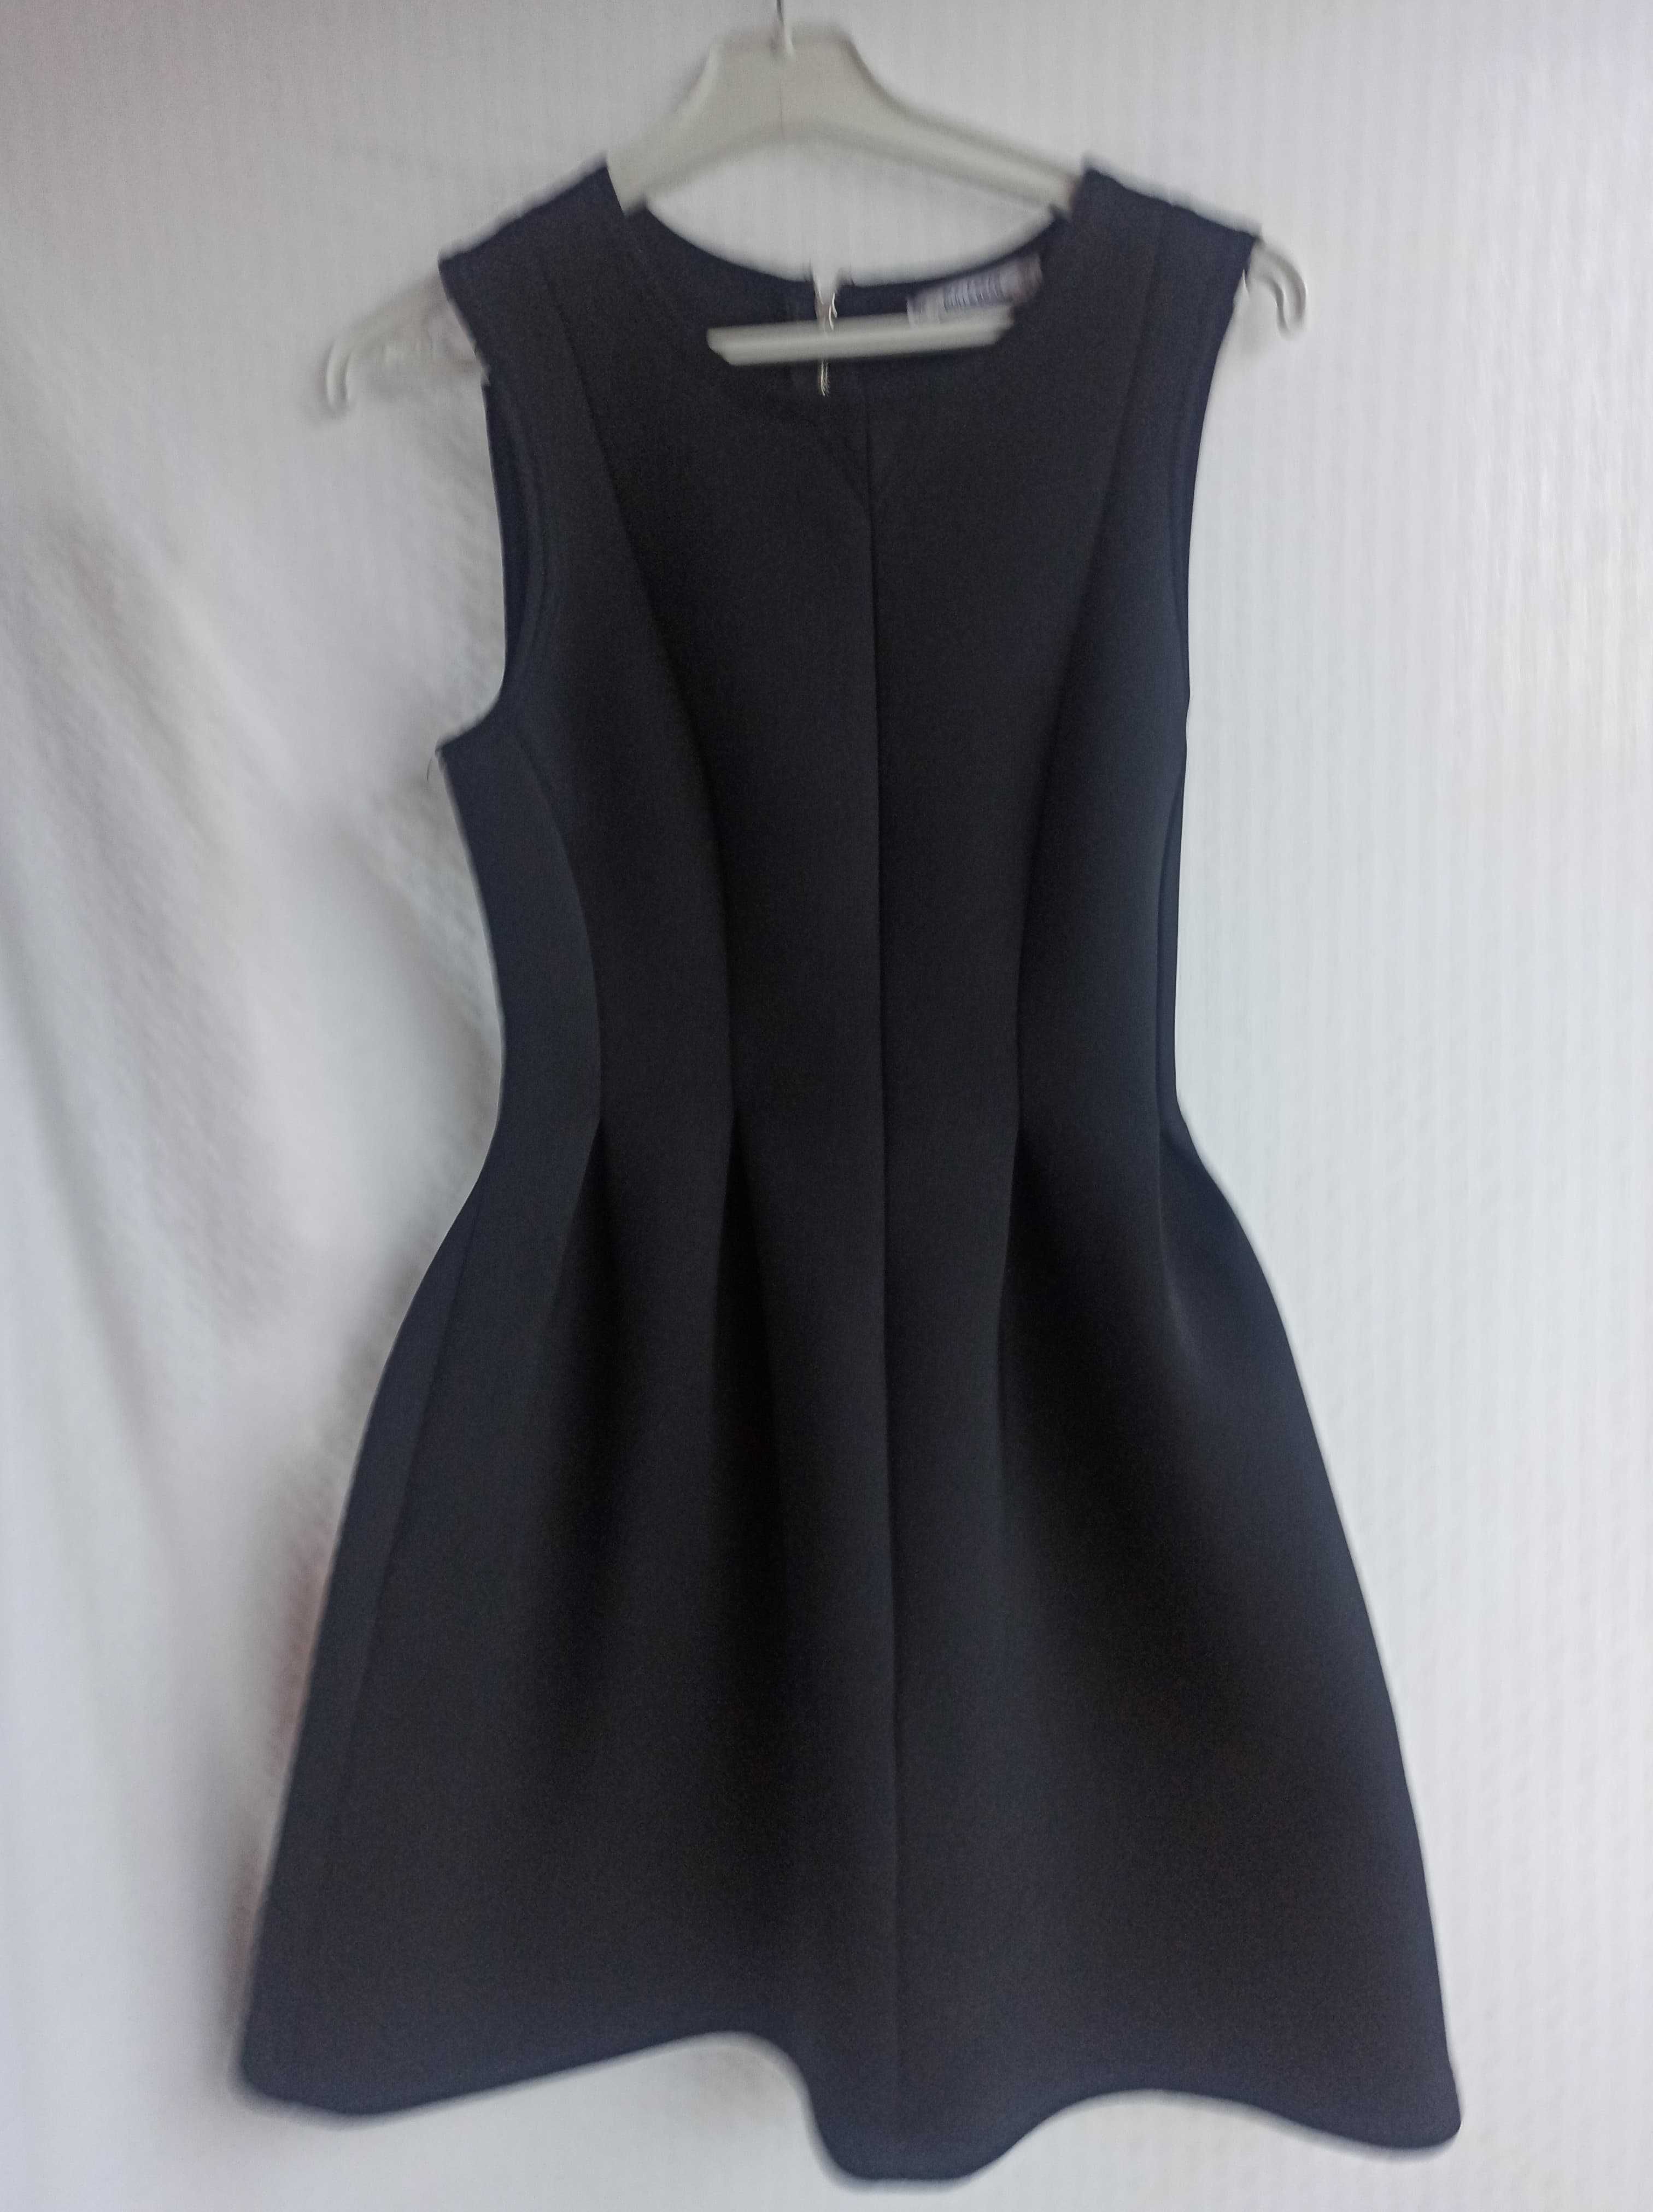 UNIKAT zjawiskowe czarne sukieneczki r.36  I INNE perełki włoskie